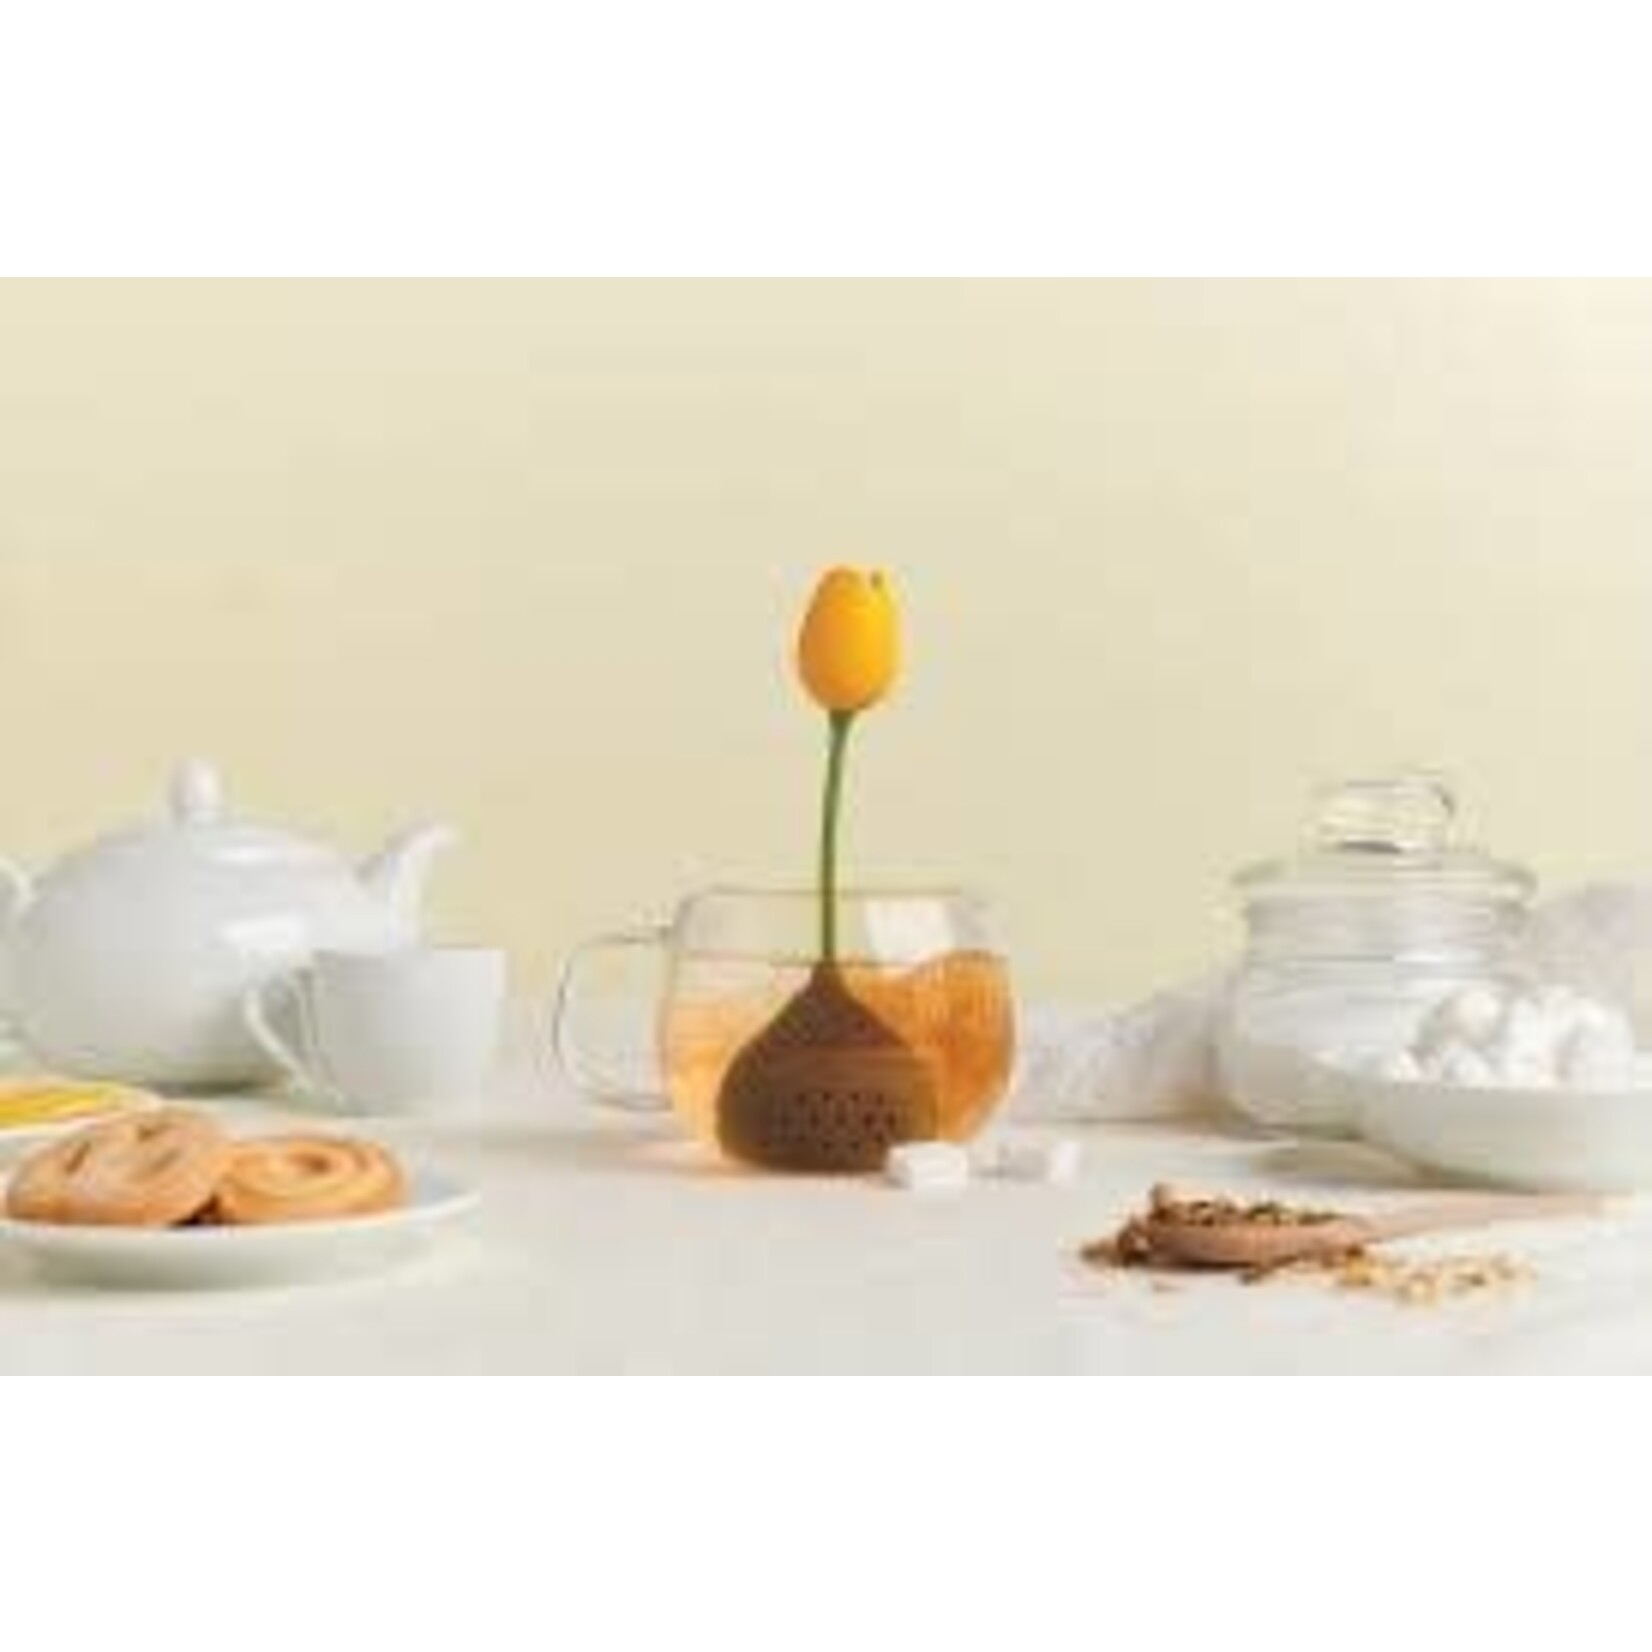 Diverse Merken gele tulp thee ei Ototo tulip tea infuser yellow tulp model Ototo Ot944